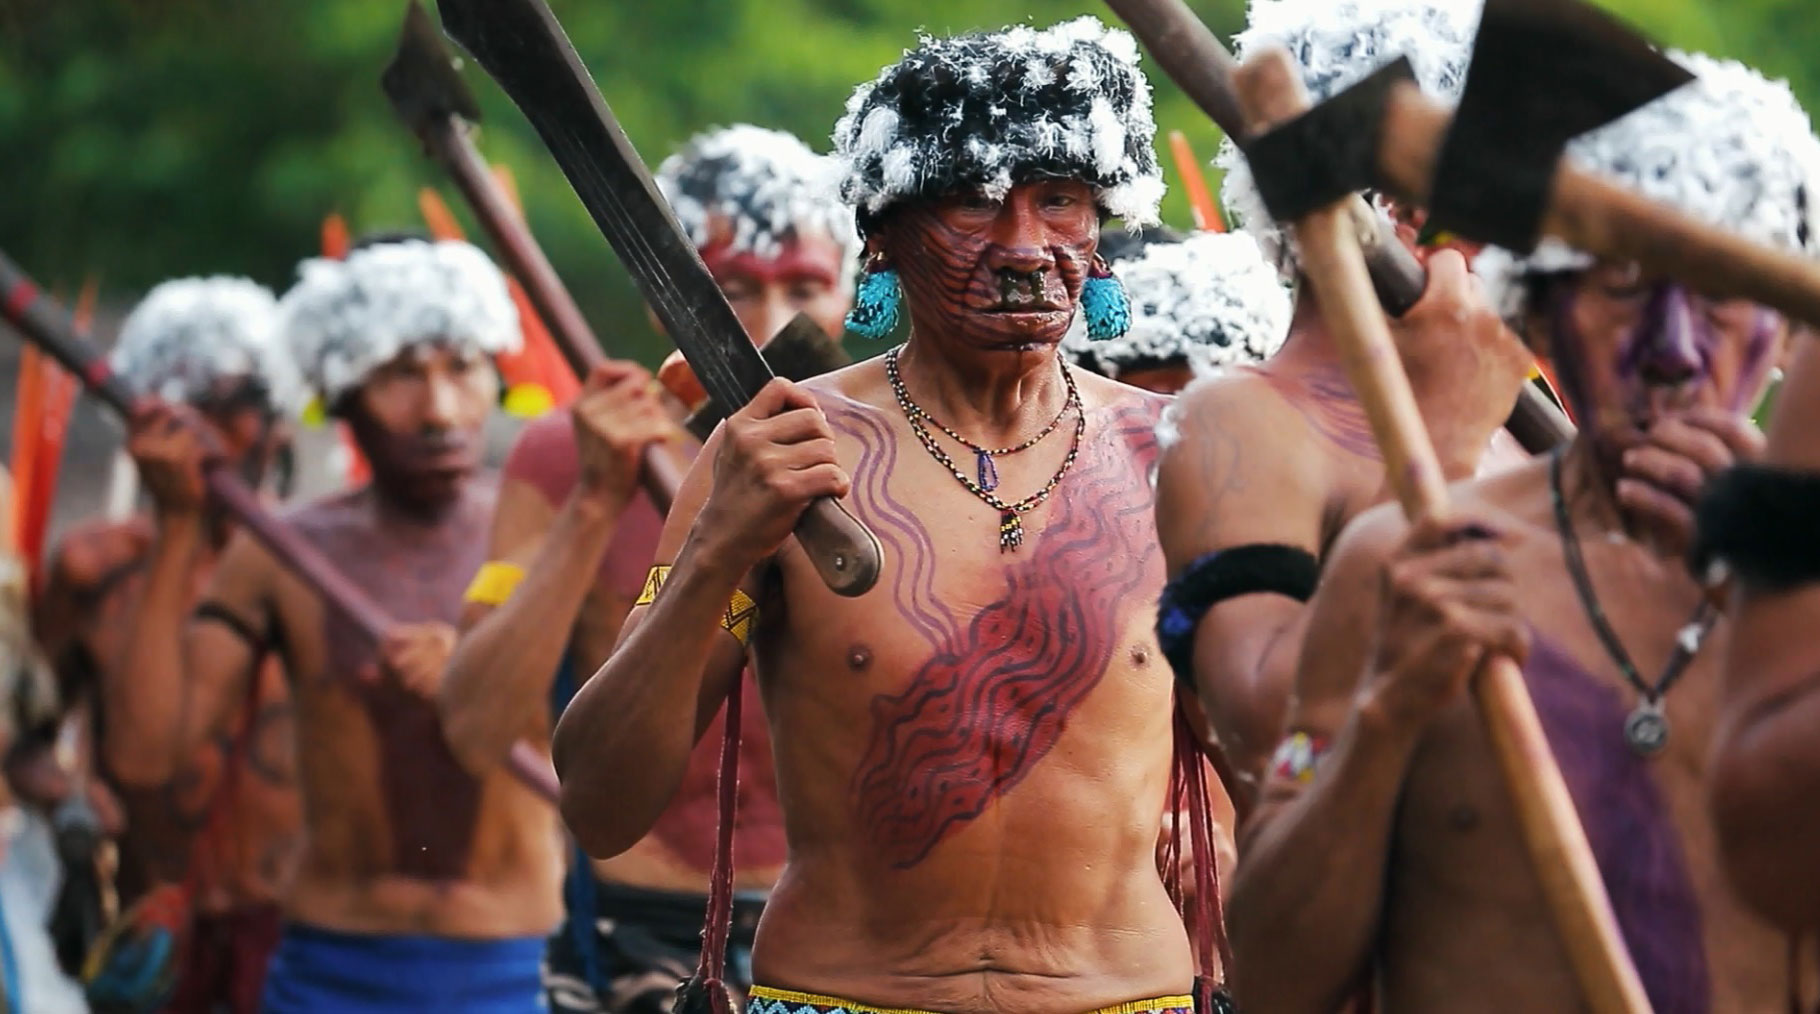 Дикие племена в бразилии